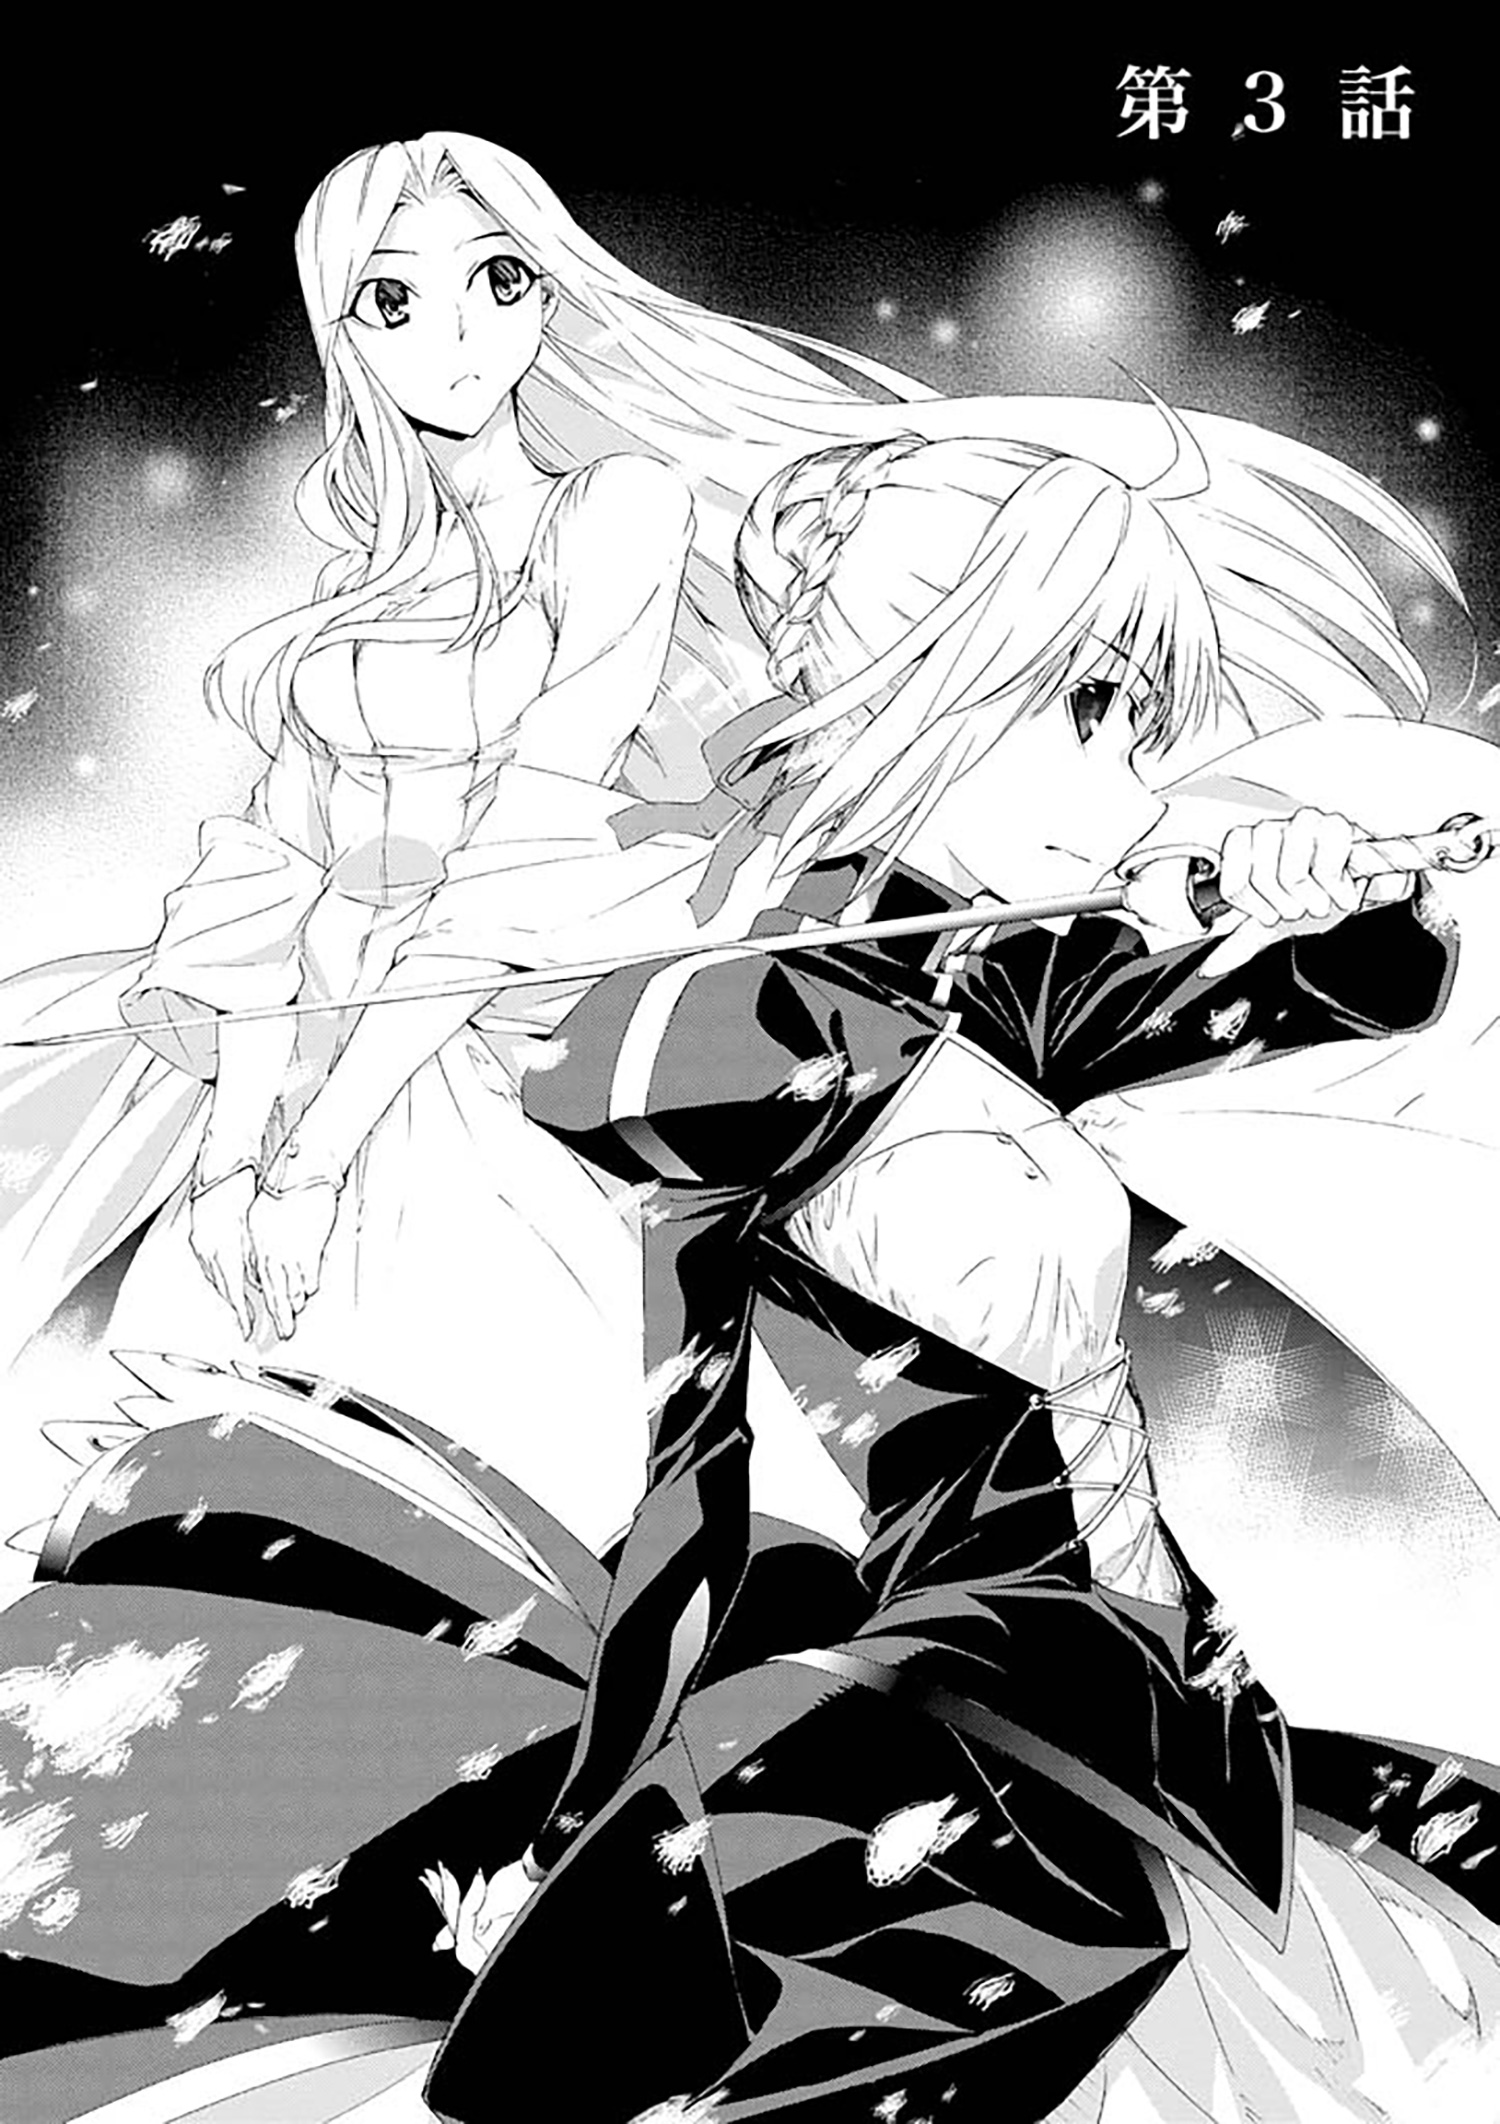 Fate Zero 第3話 Type Moonコミックエース 無料で漫画が読めるオンラインマガジン